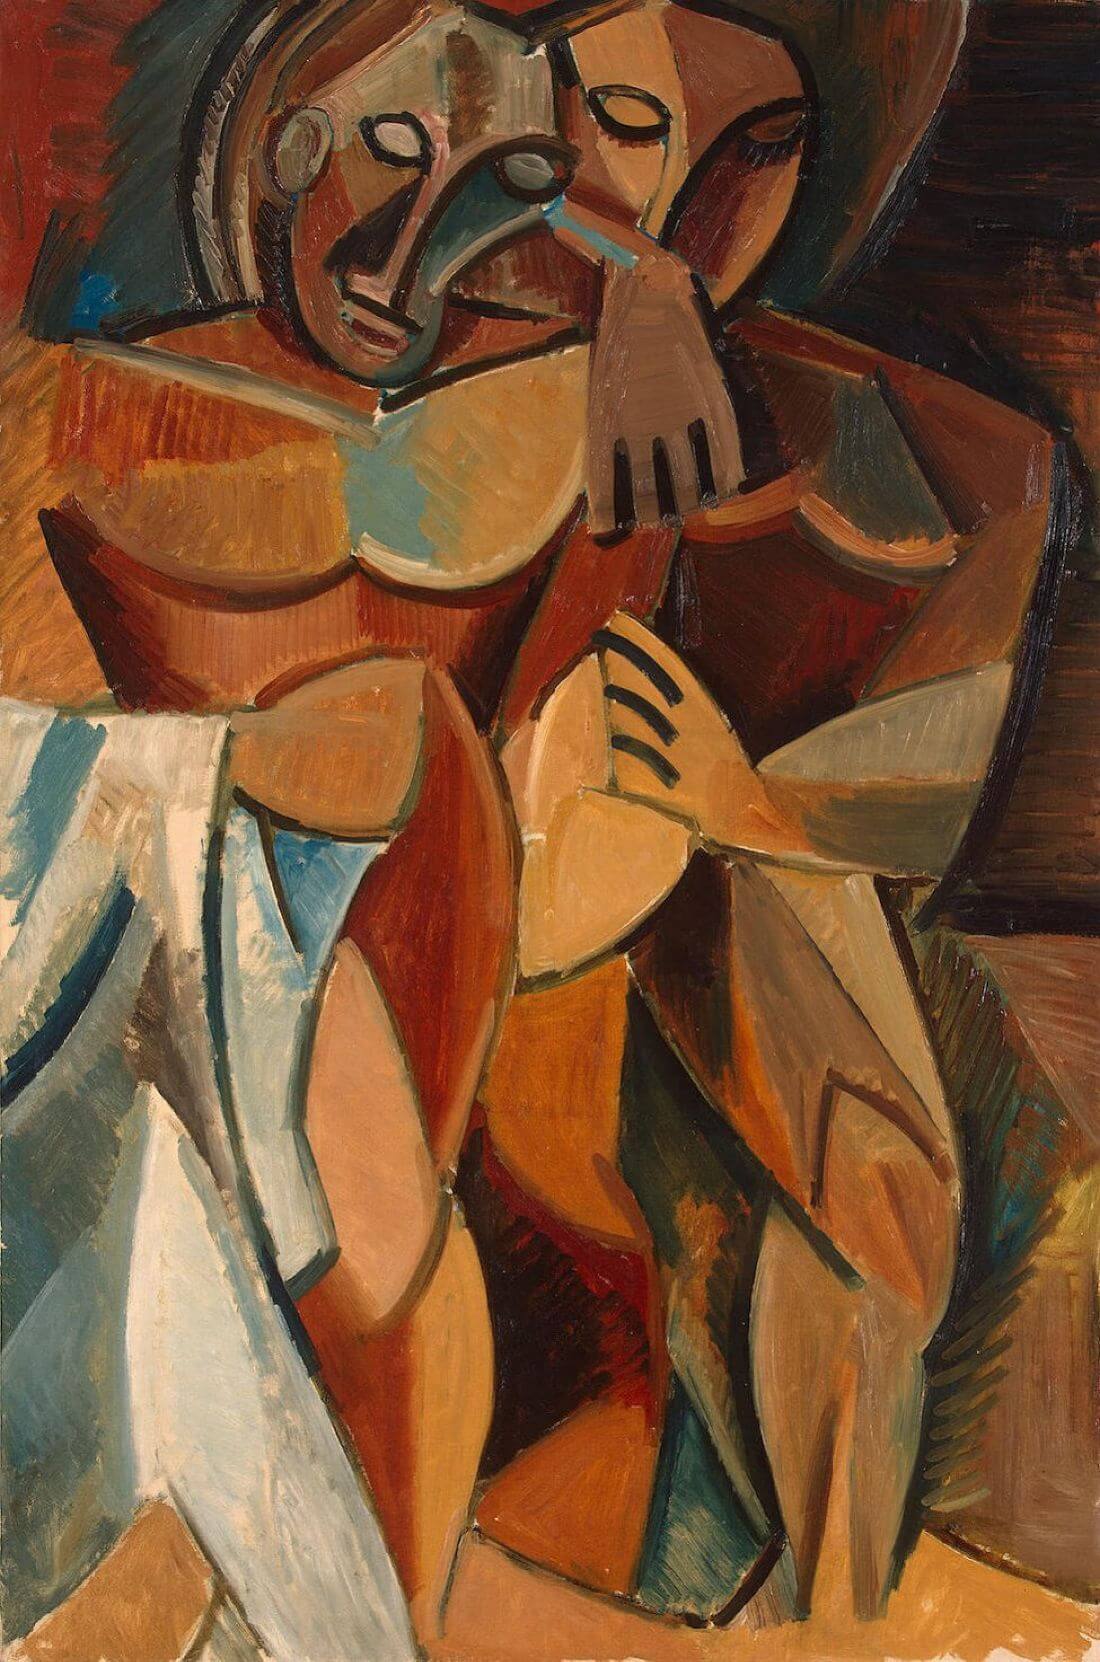 Friendship - Pablo Picasso - Primitivism Art Painting - Large Art ...